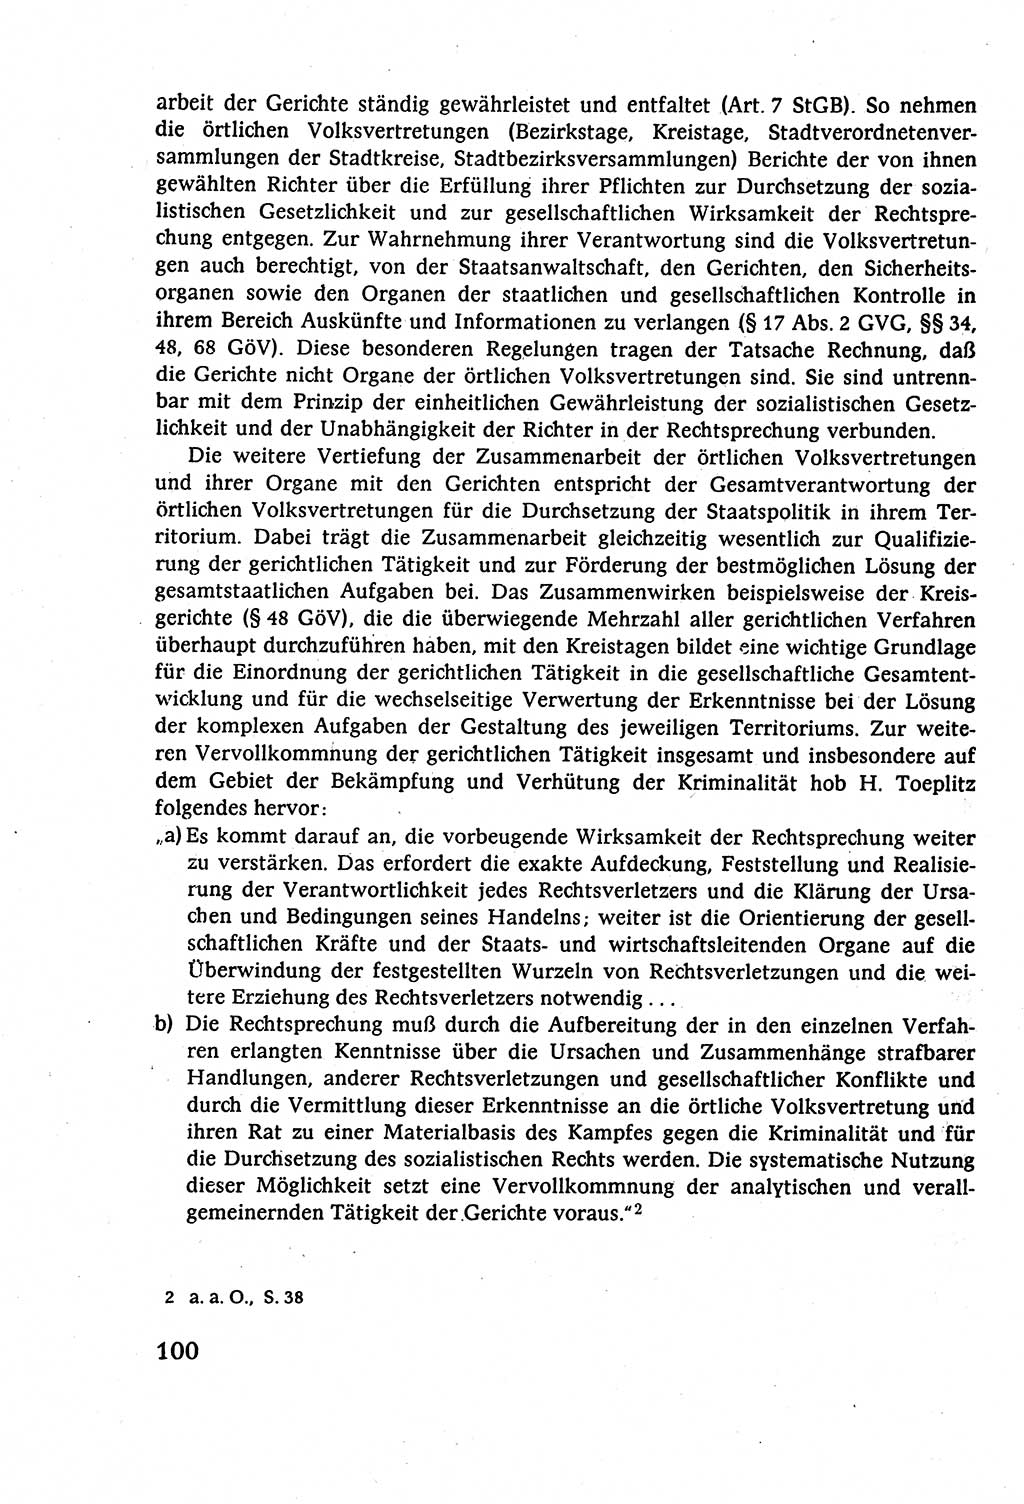 Strafverfahrensrecht [Deutsche Demokratische Republik (DDR)], Lehrbuch 1977, Seite 100 (Strafverf.-R. DDR Lb. 1977, S. 100)